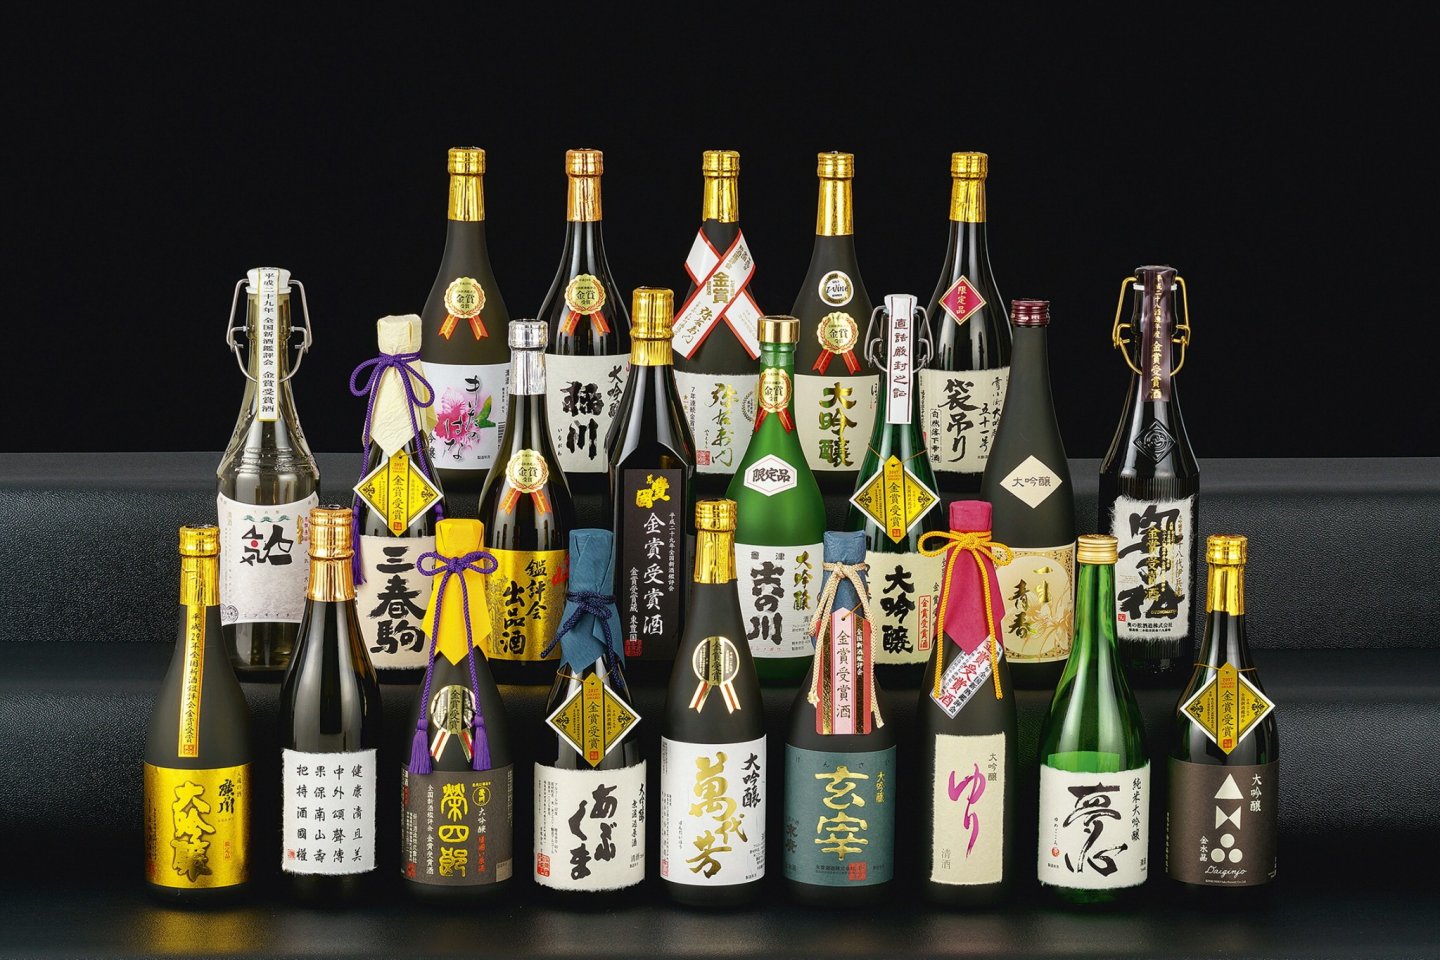 The 2016 brewing season Gold Prize winning sake